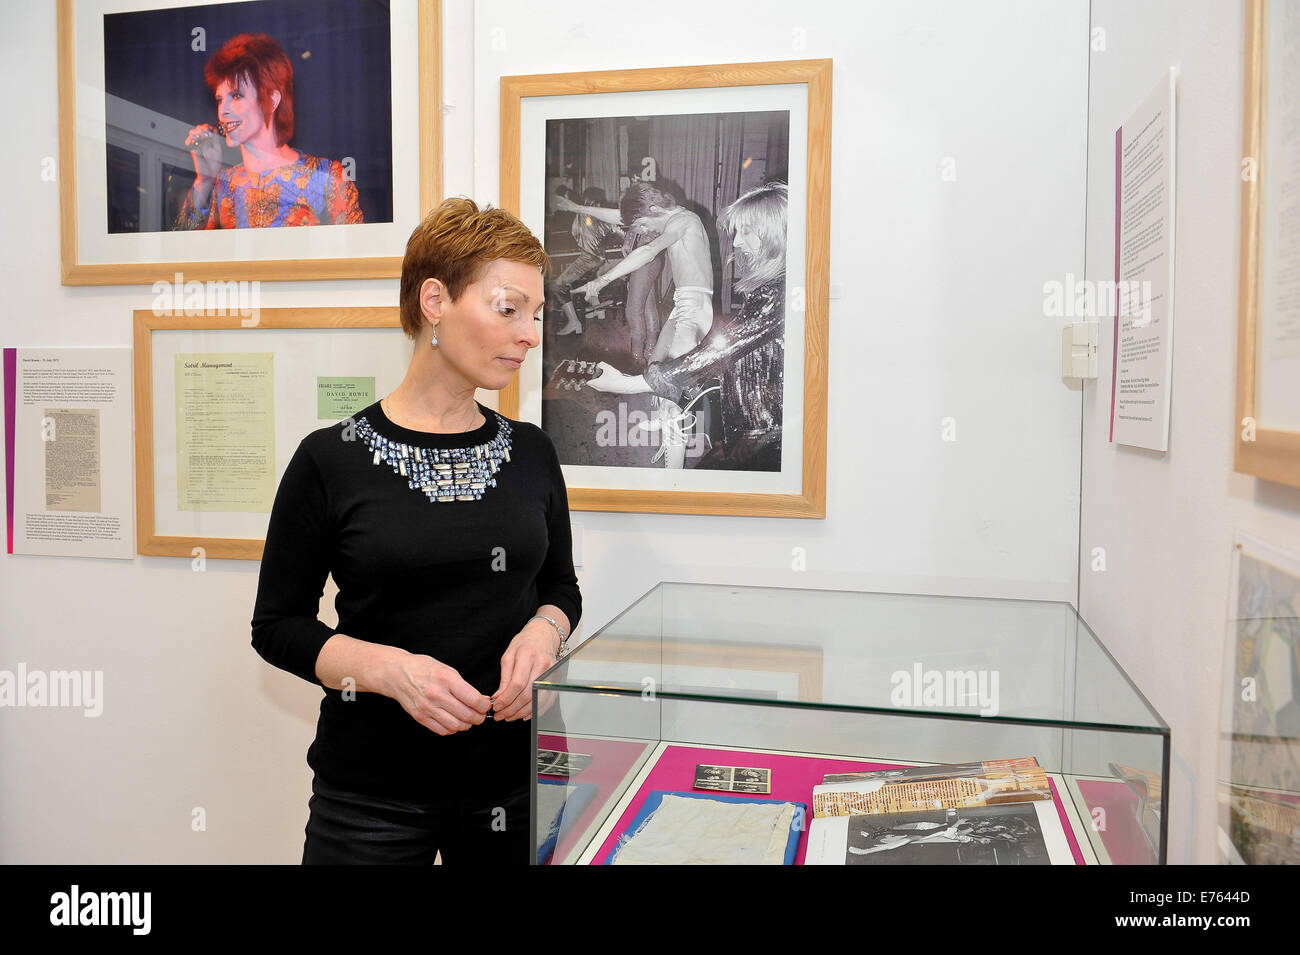 Brüder Musik Club Aylesbury ist neue Großausstellung Musik Erinnerungsstücke, mit David Bowies Riss Ziggy Stardust Hemd, seltene Erinnerungsstücke, die im Zusammenhang mit David Bowie, Lou Reed, Genesis, The Ramones, Talking Heads, The Clash, Roxy Music und Queen, "The E Stockfoto